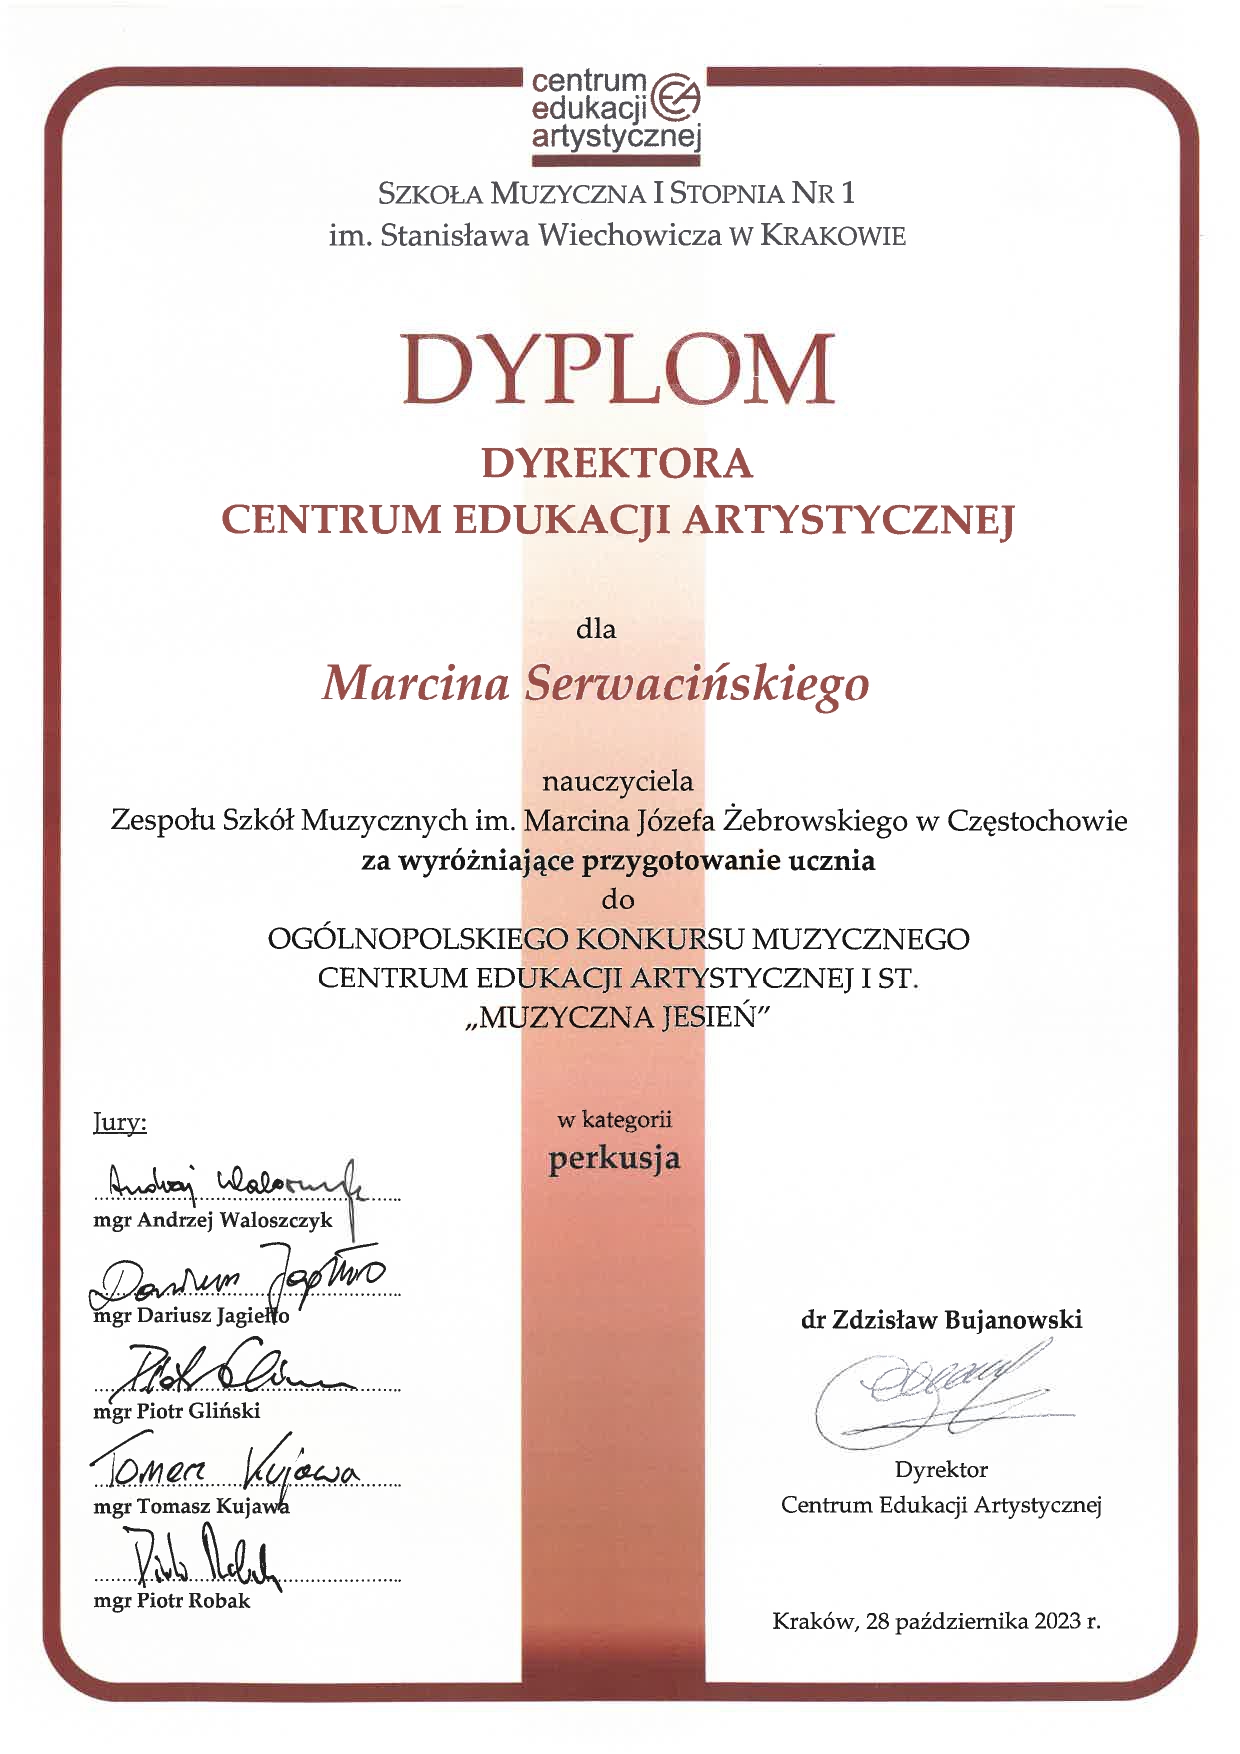 Dyplom dla nauczyciela za wyróżniające przygotowanie ucznia do Ogólnopolskiego Konkursu Muzycznego Centrum Edukacji Artystycznej I stopnia "Muzyczna Jesień"